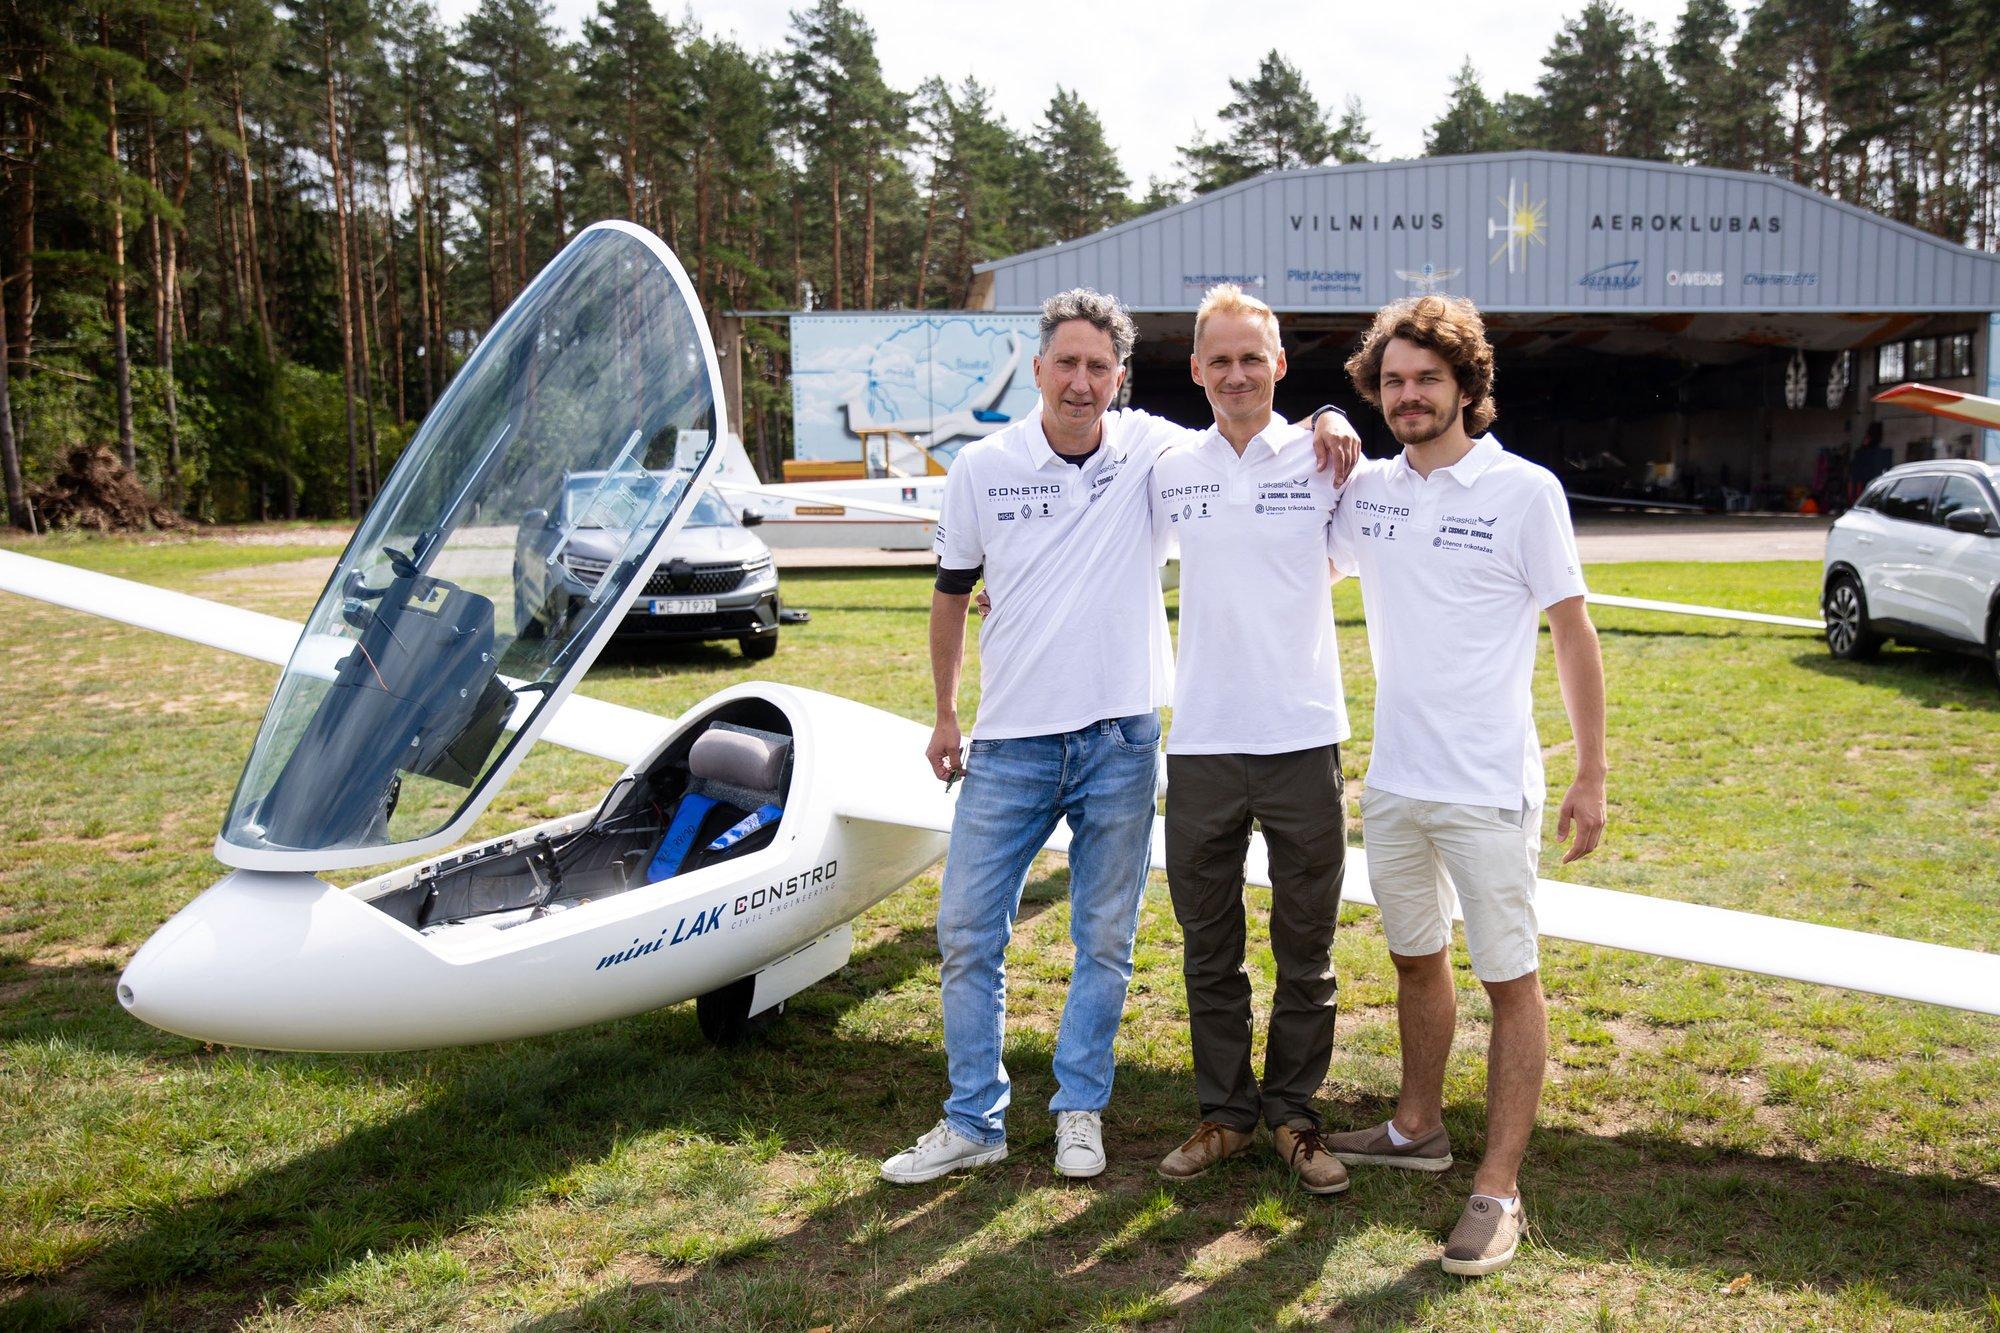 Lithuanian glider pilots finish their cross-European flight